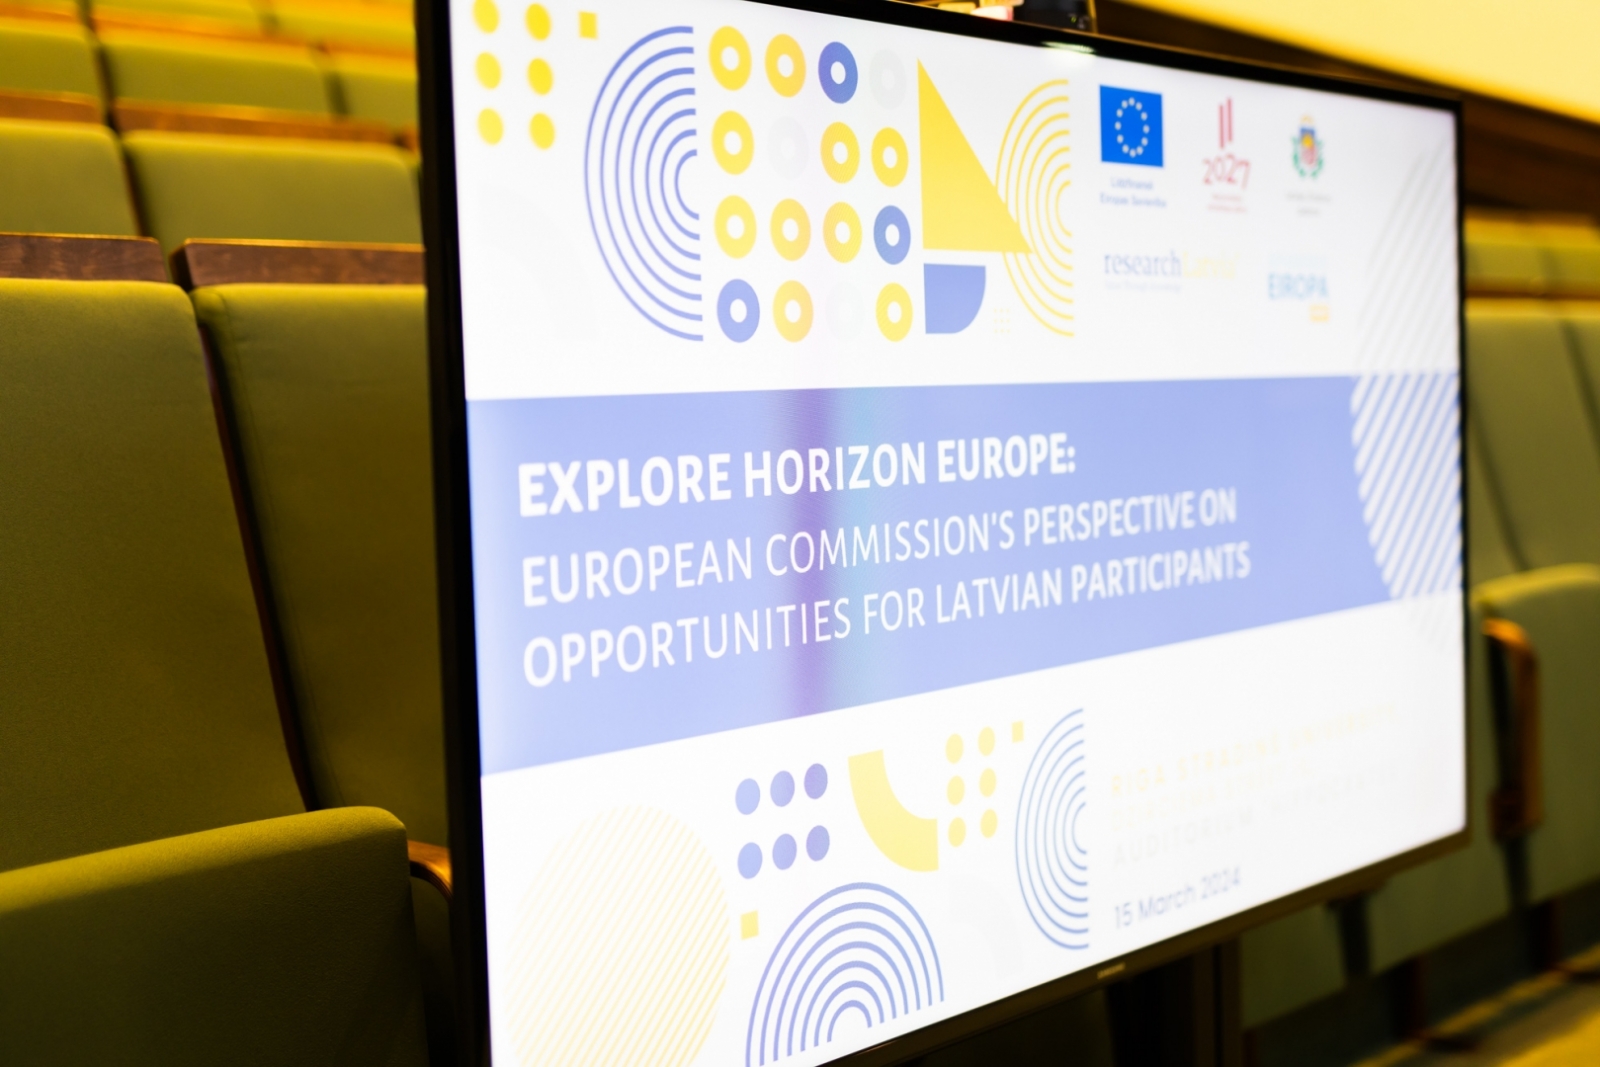 Informatīvais seminārs "Apvārsnis Eiropa: Eiropas Komisijas redzējums par iespējām dalībniekiem no Latvijas”